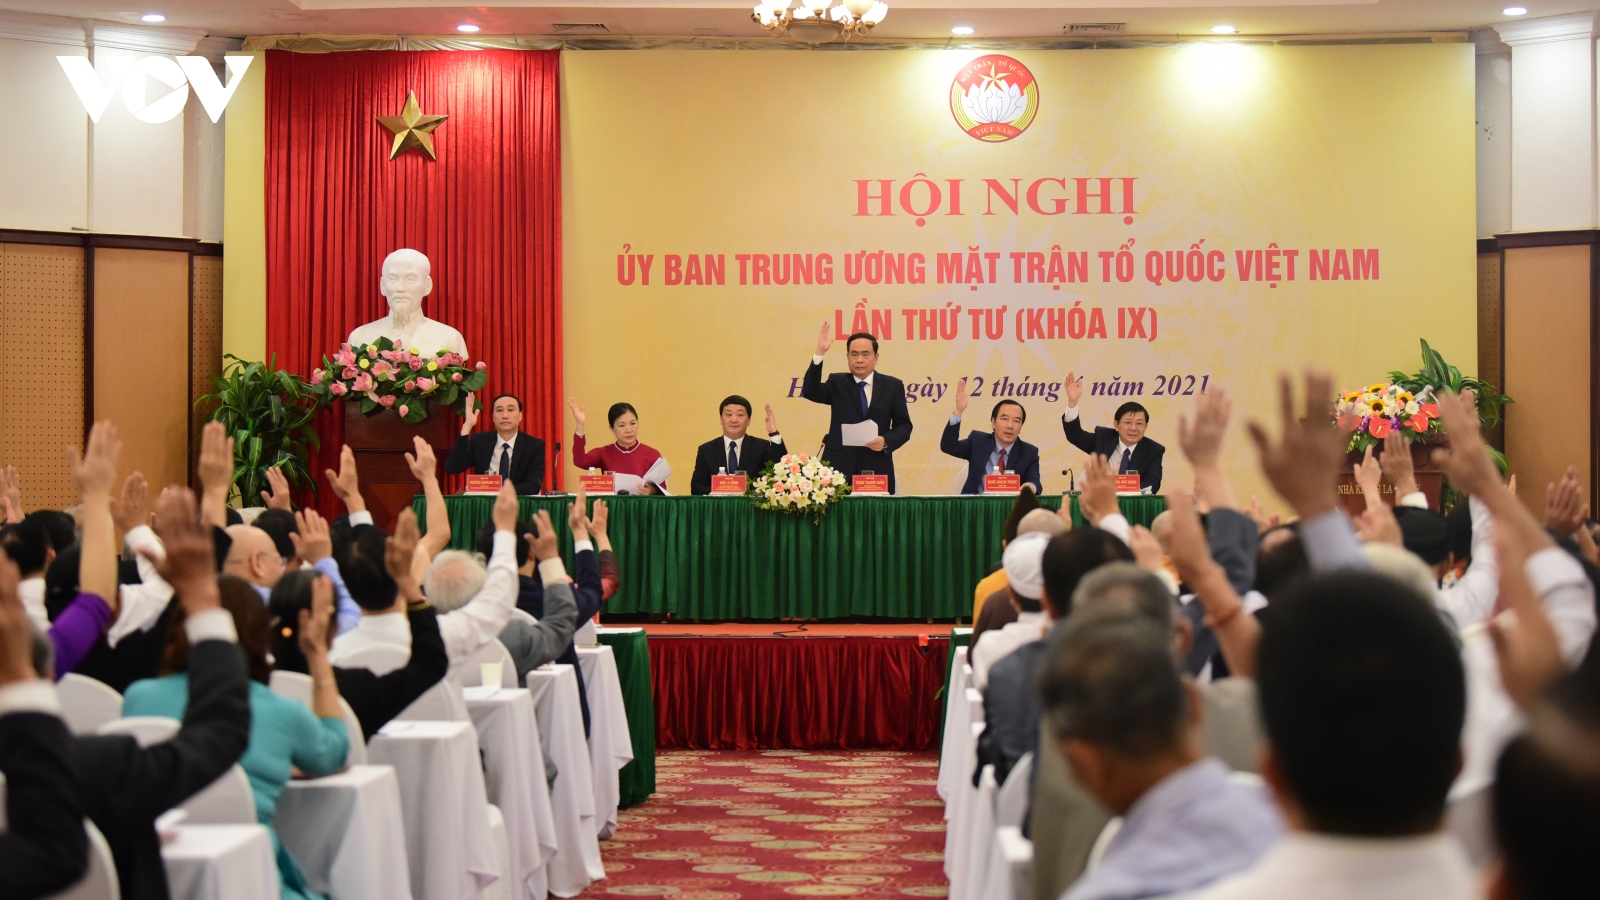 Bộ máy lãnh đạo Uỷ ban Trung ương MTTQ Việt Nam khoá IX sau Hội nghị lần thứ tư